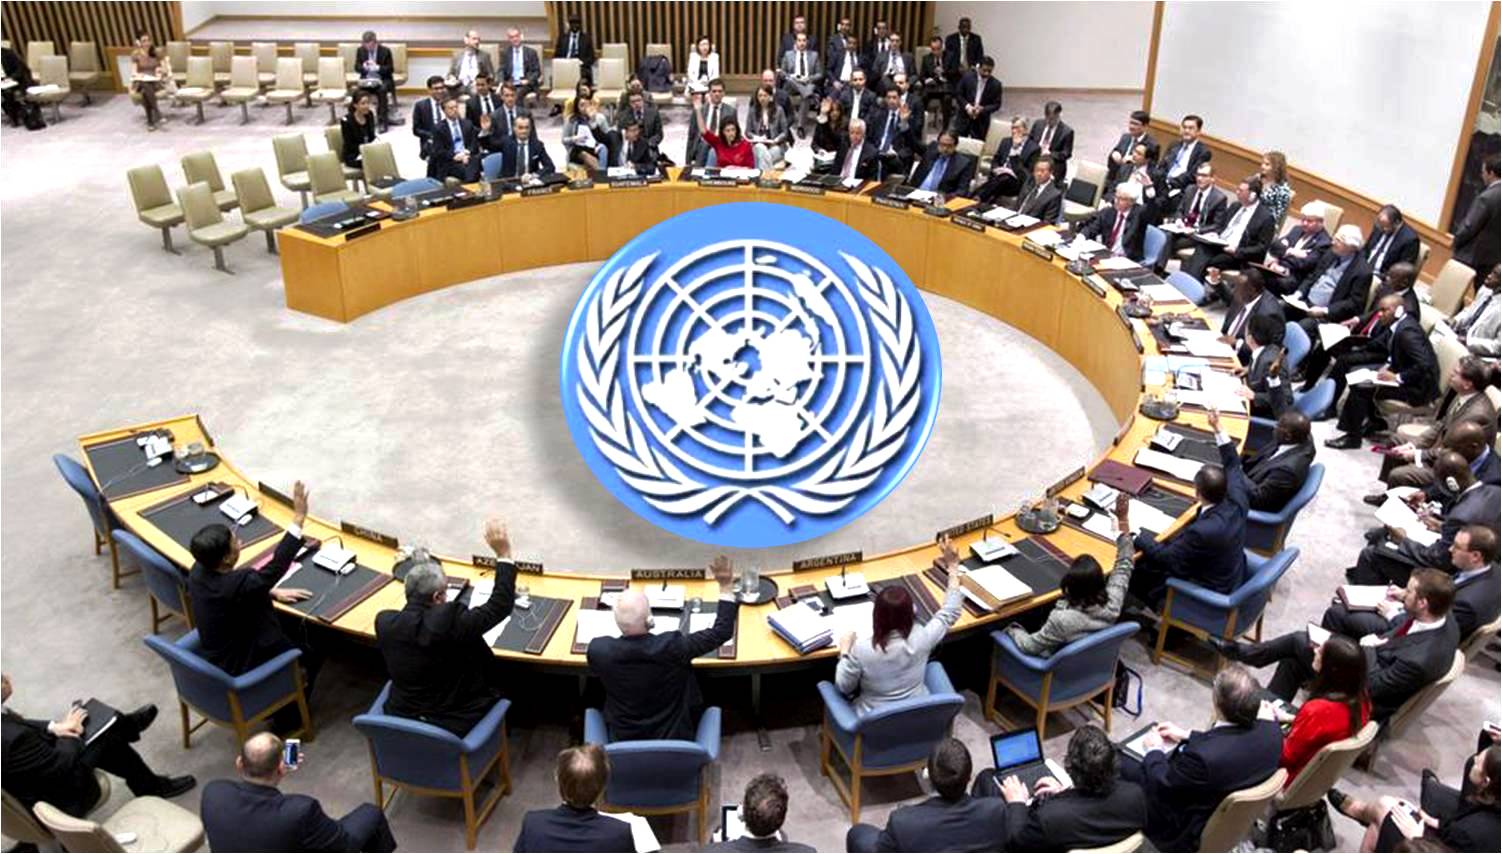 Оон 1991. Генеральная Ассамблея и совет безопасности ООН. Организация Объединенных наций (ООН). Международные организации совет безопасности ООН. Зал сб ООН.